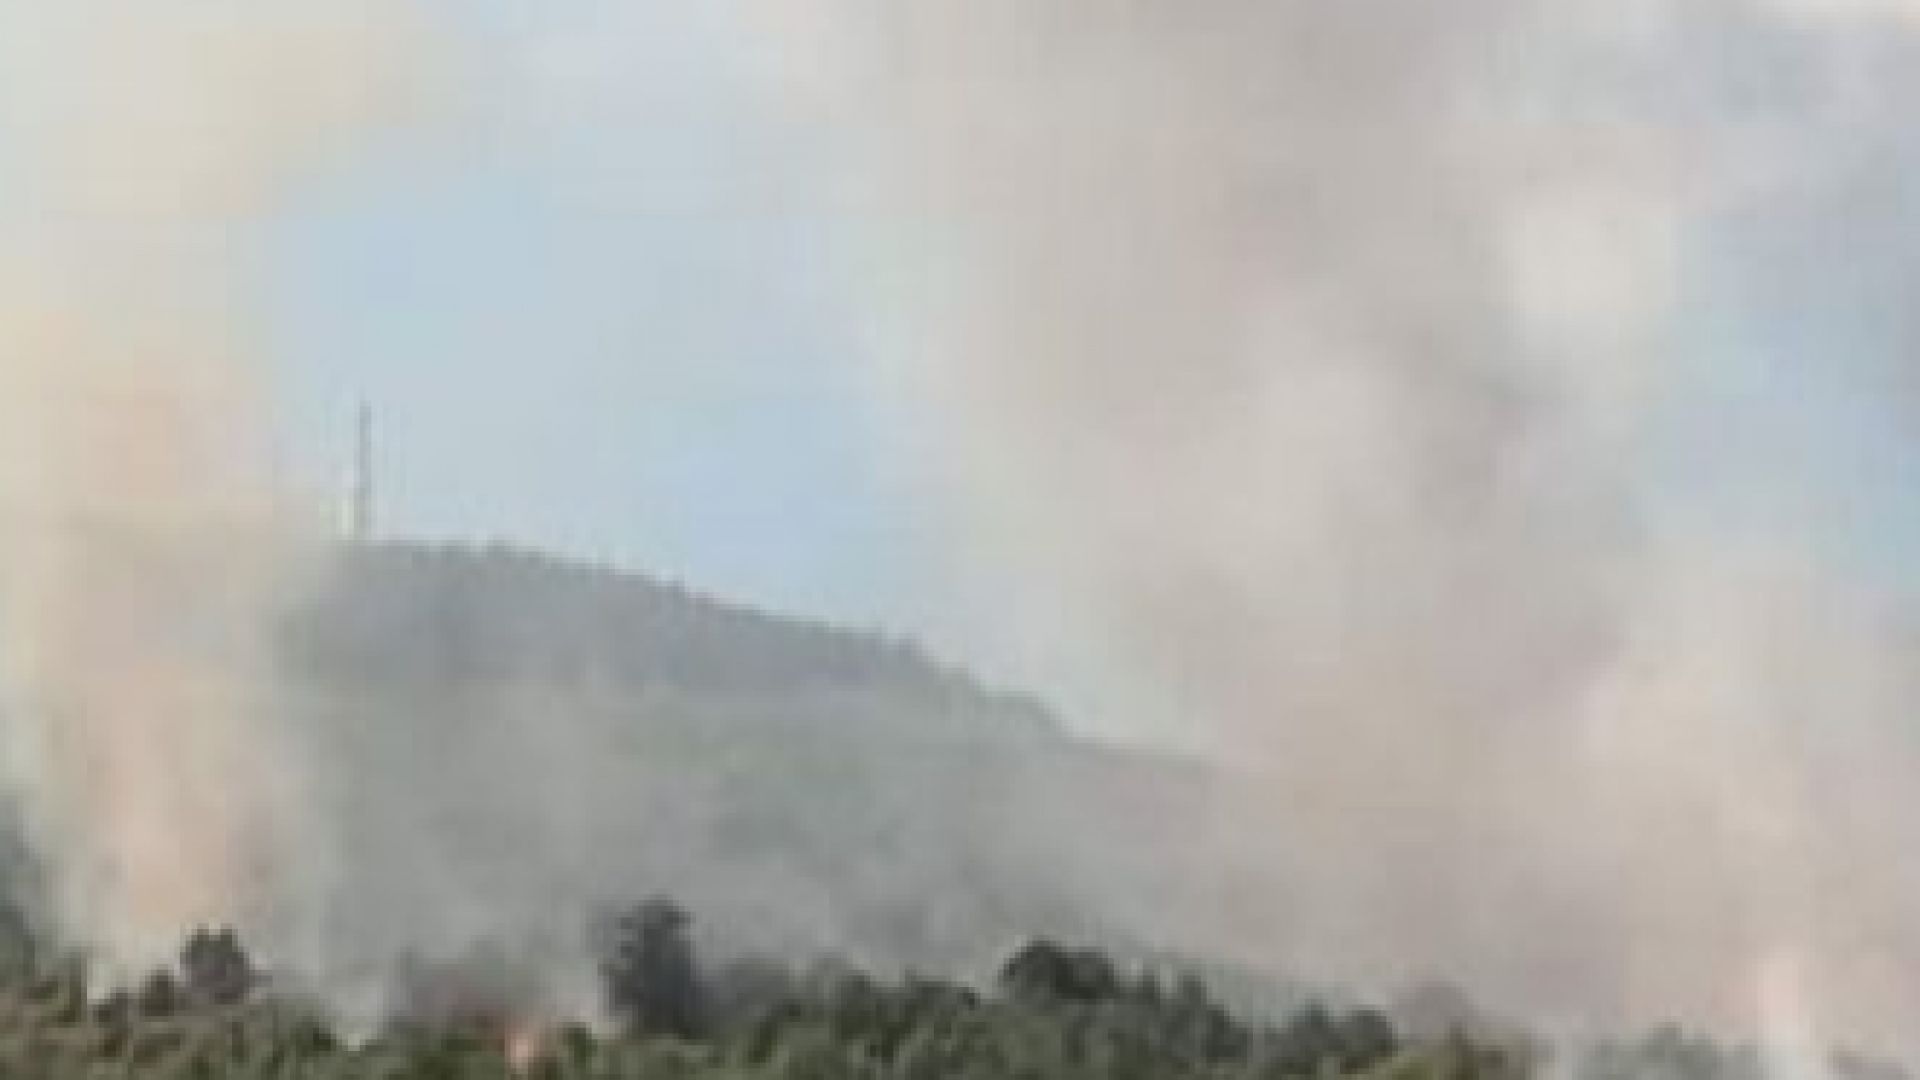 Голям пожар гори край софийското село Реброво Пламъците обхванали местността